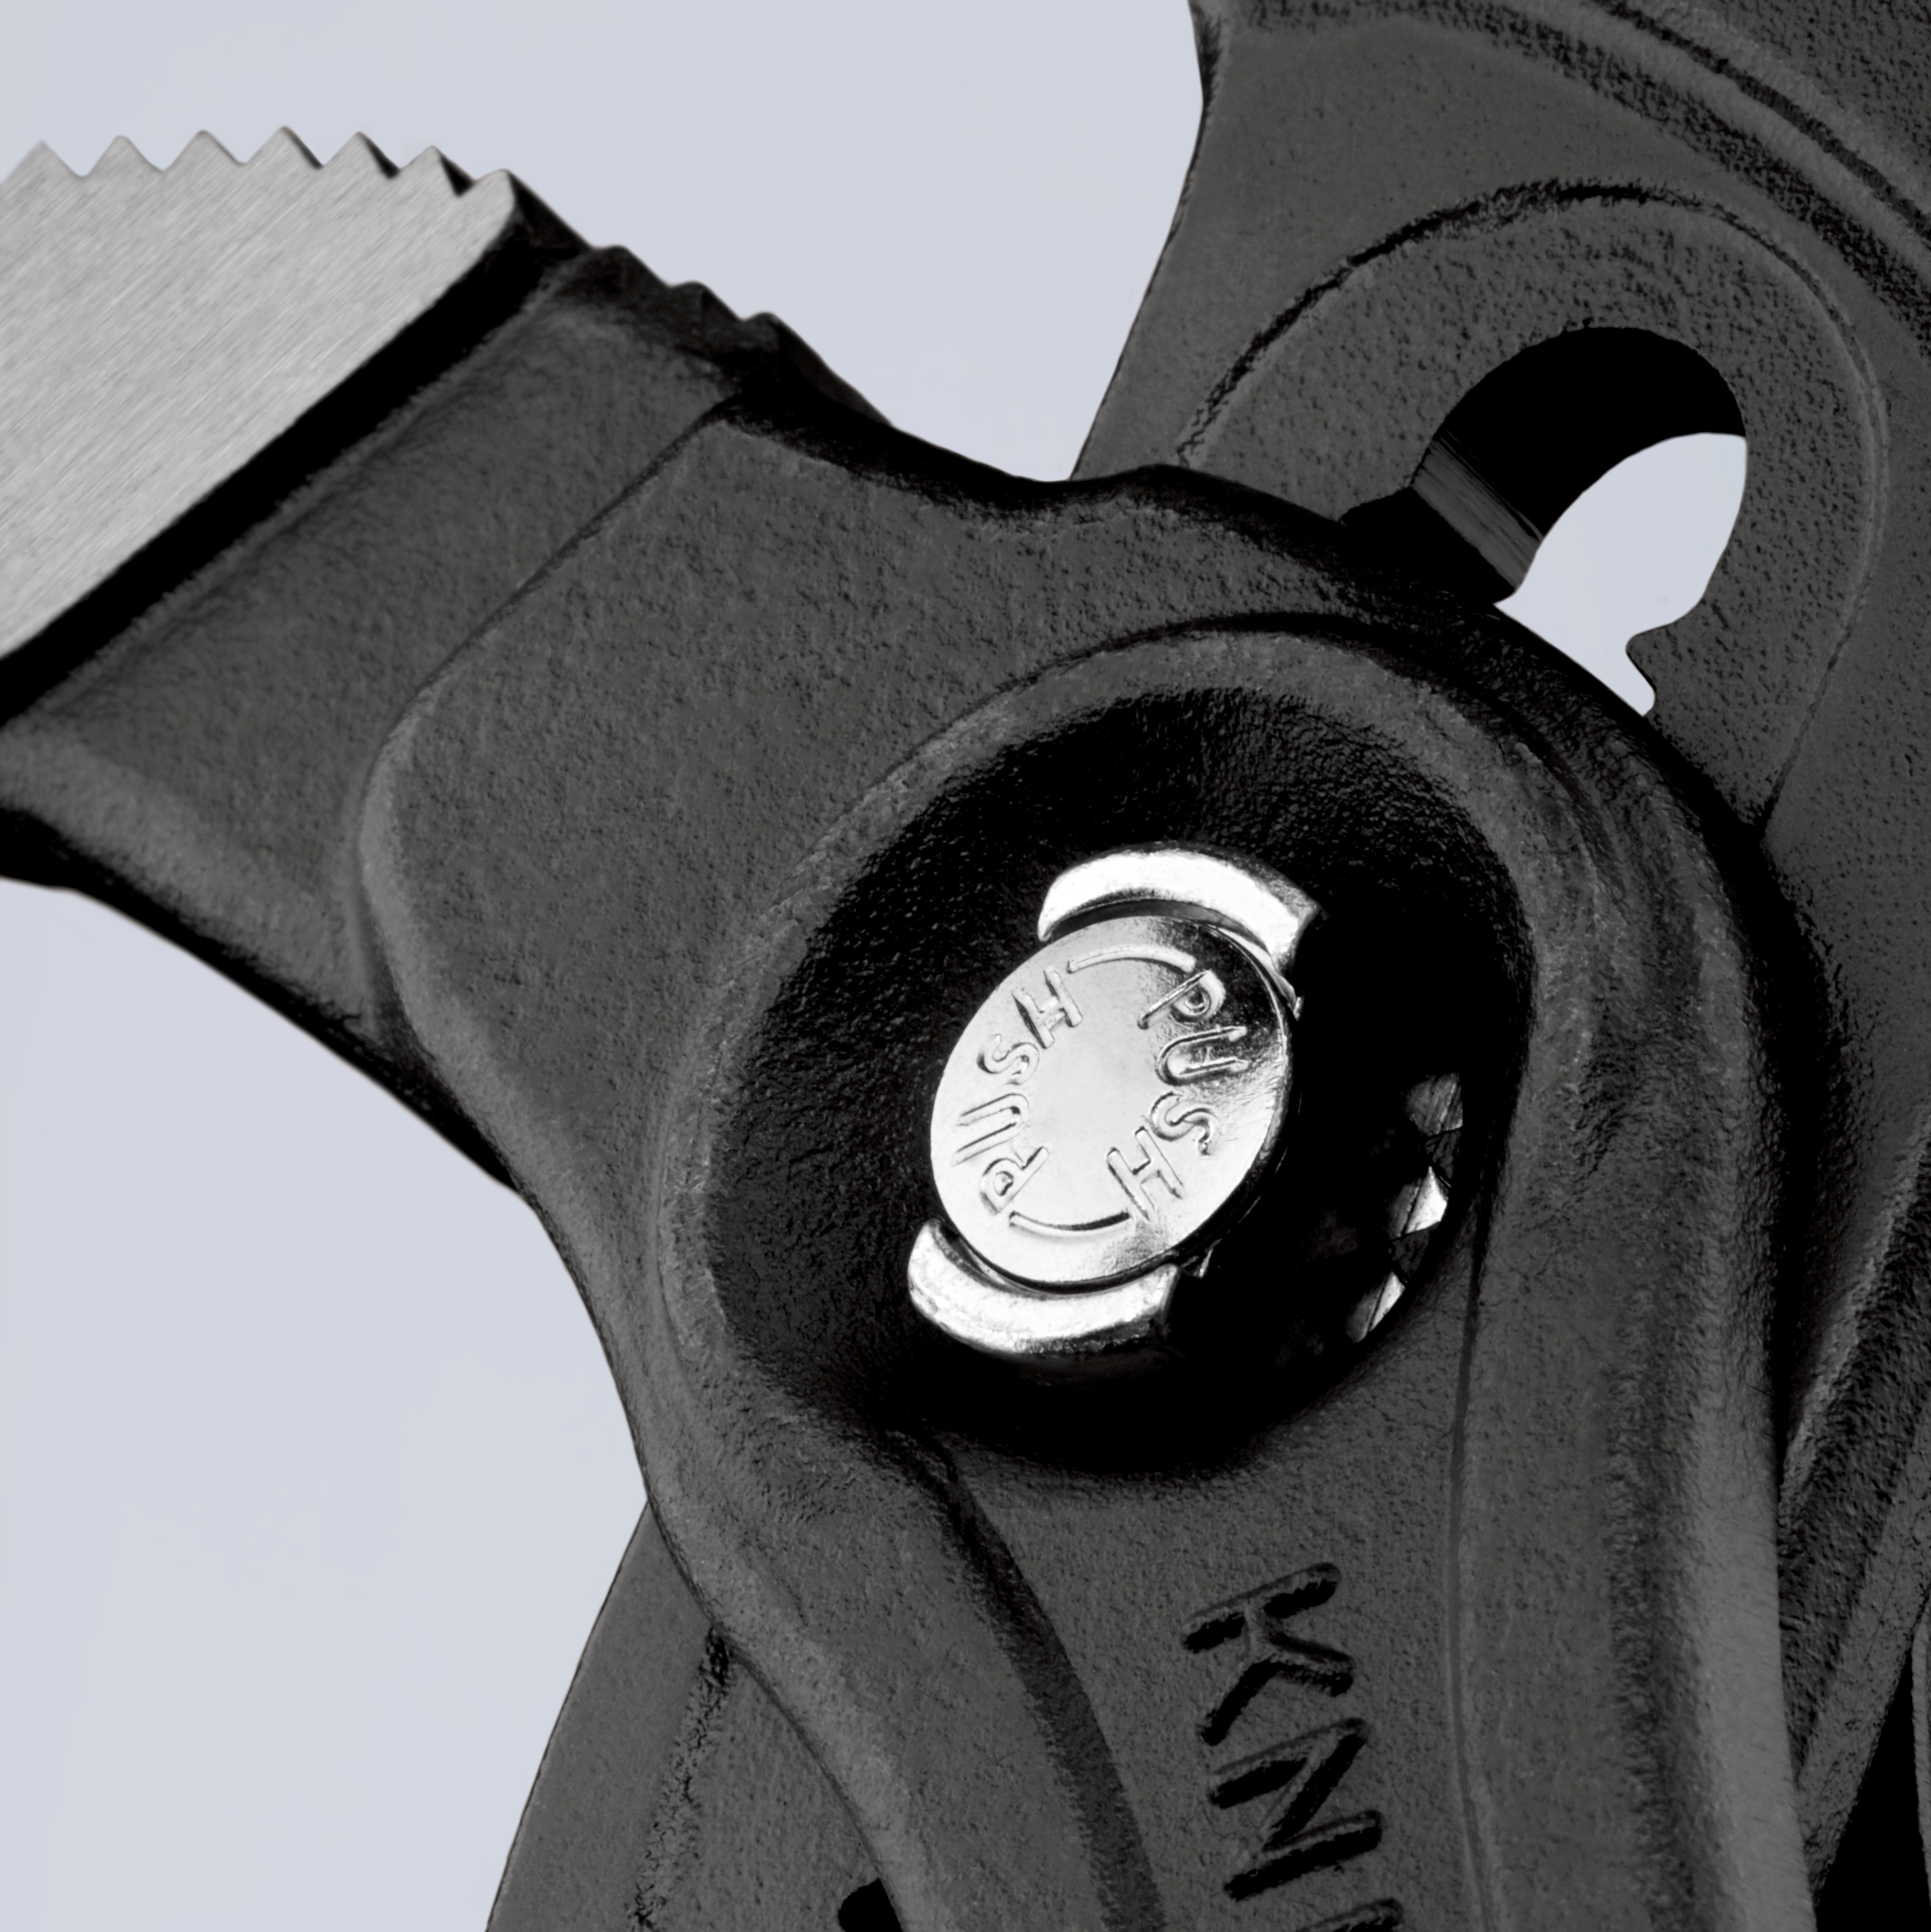 KNIPEX Cobra® XL Rohr- und Wasserpumpenzange mit Kunststoff überzogen grau atramentiert 400 mm